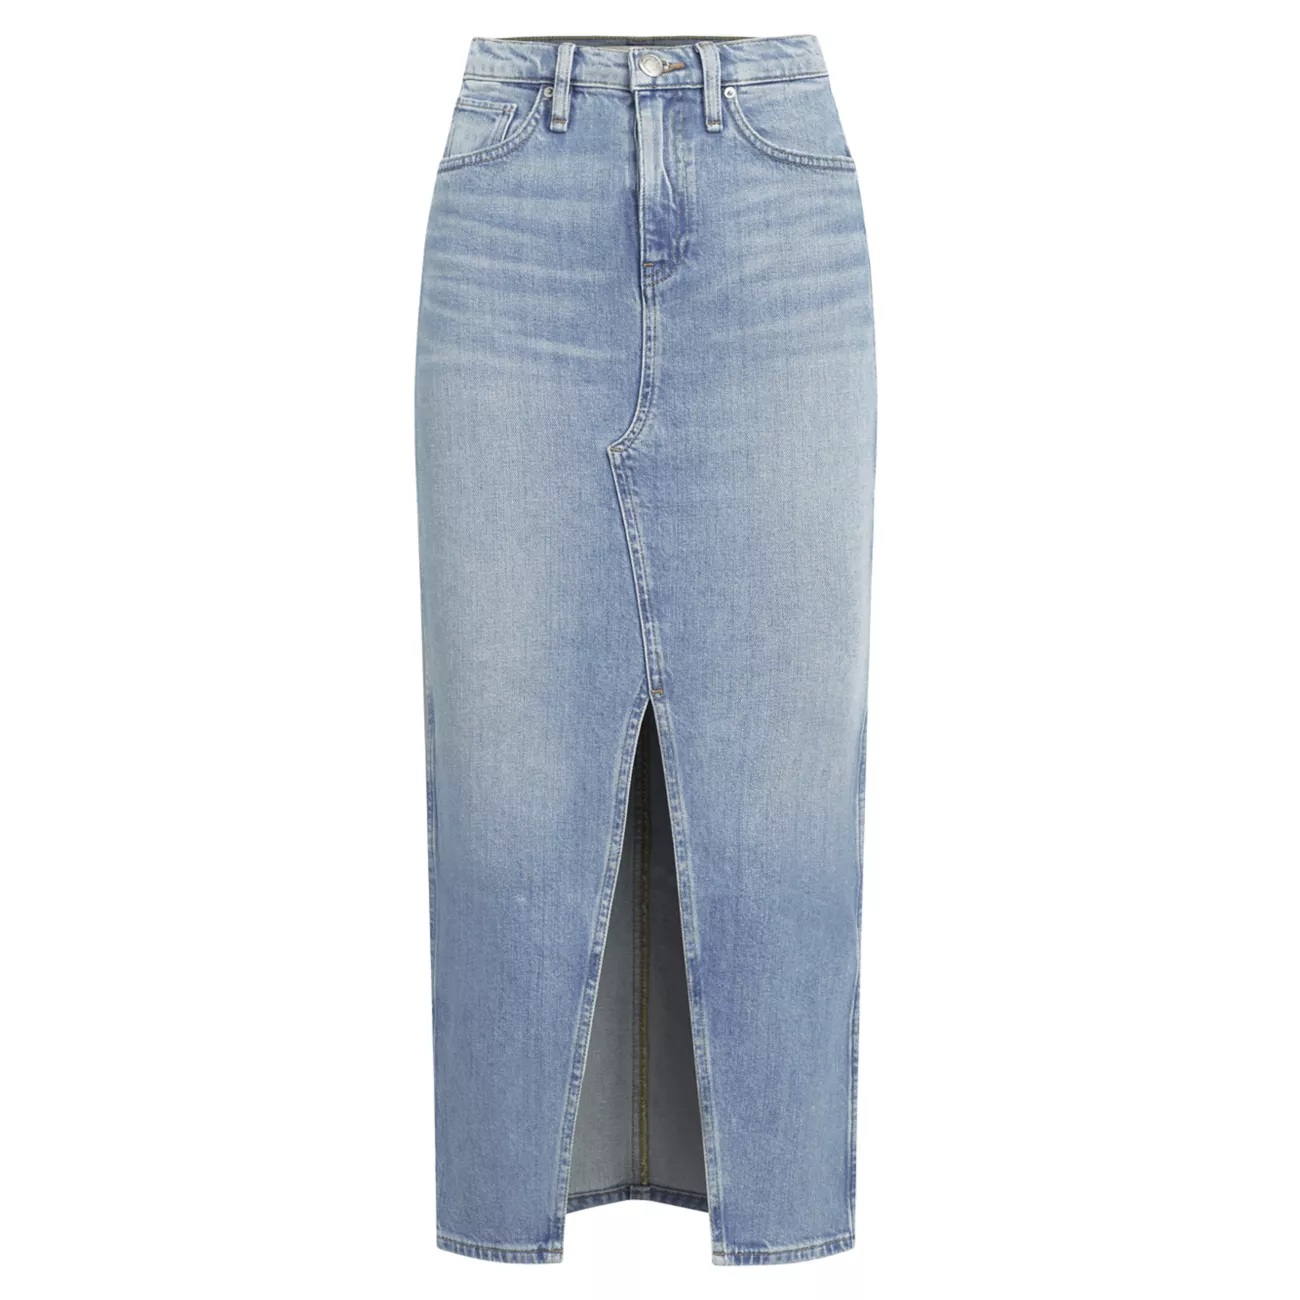 Реконструированная джинсовая юбка-миди Hudson Jeans